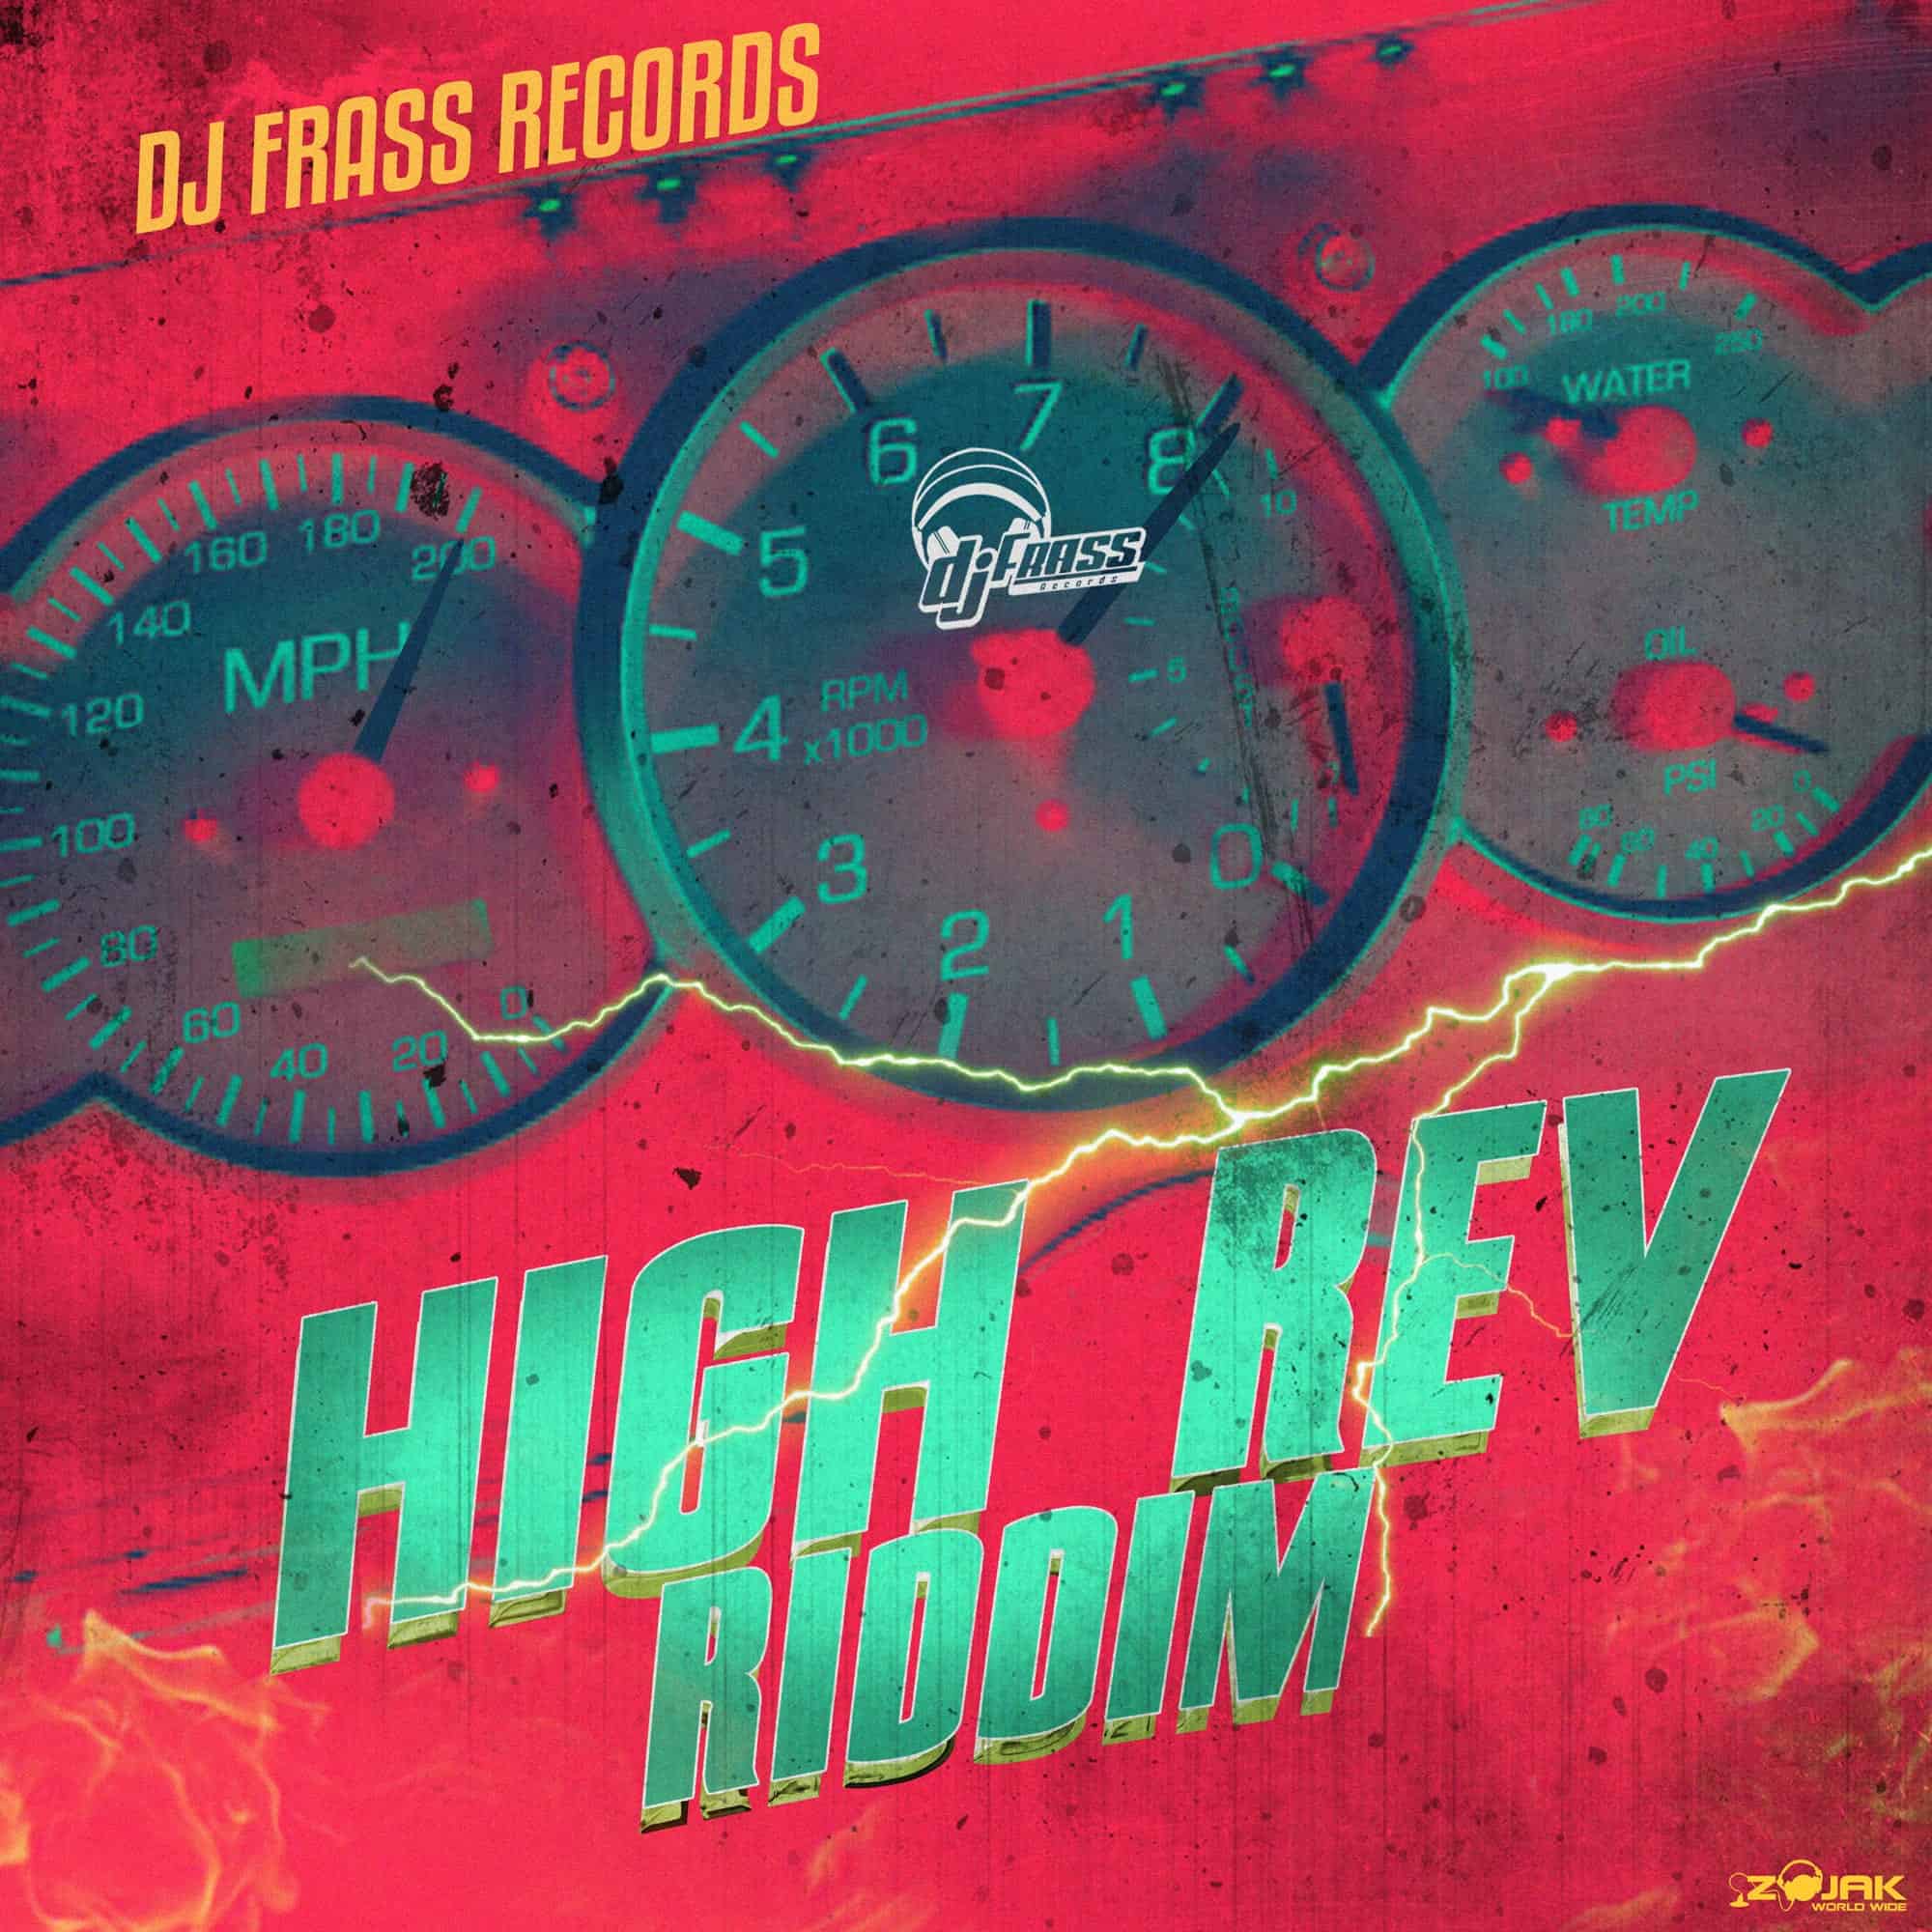 High Rev Riddim - DJ Frass Records